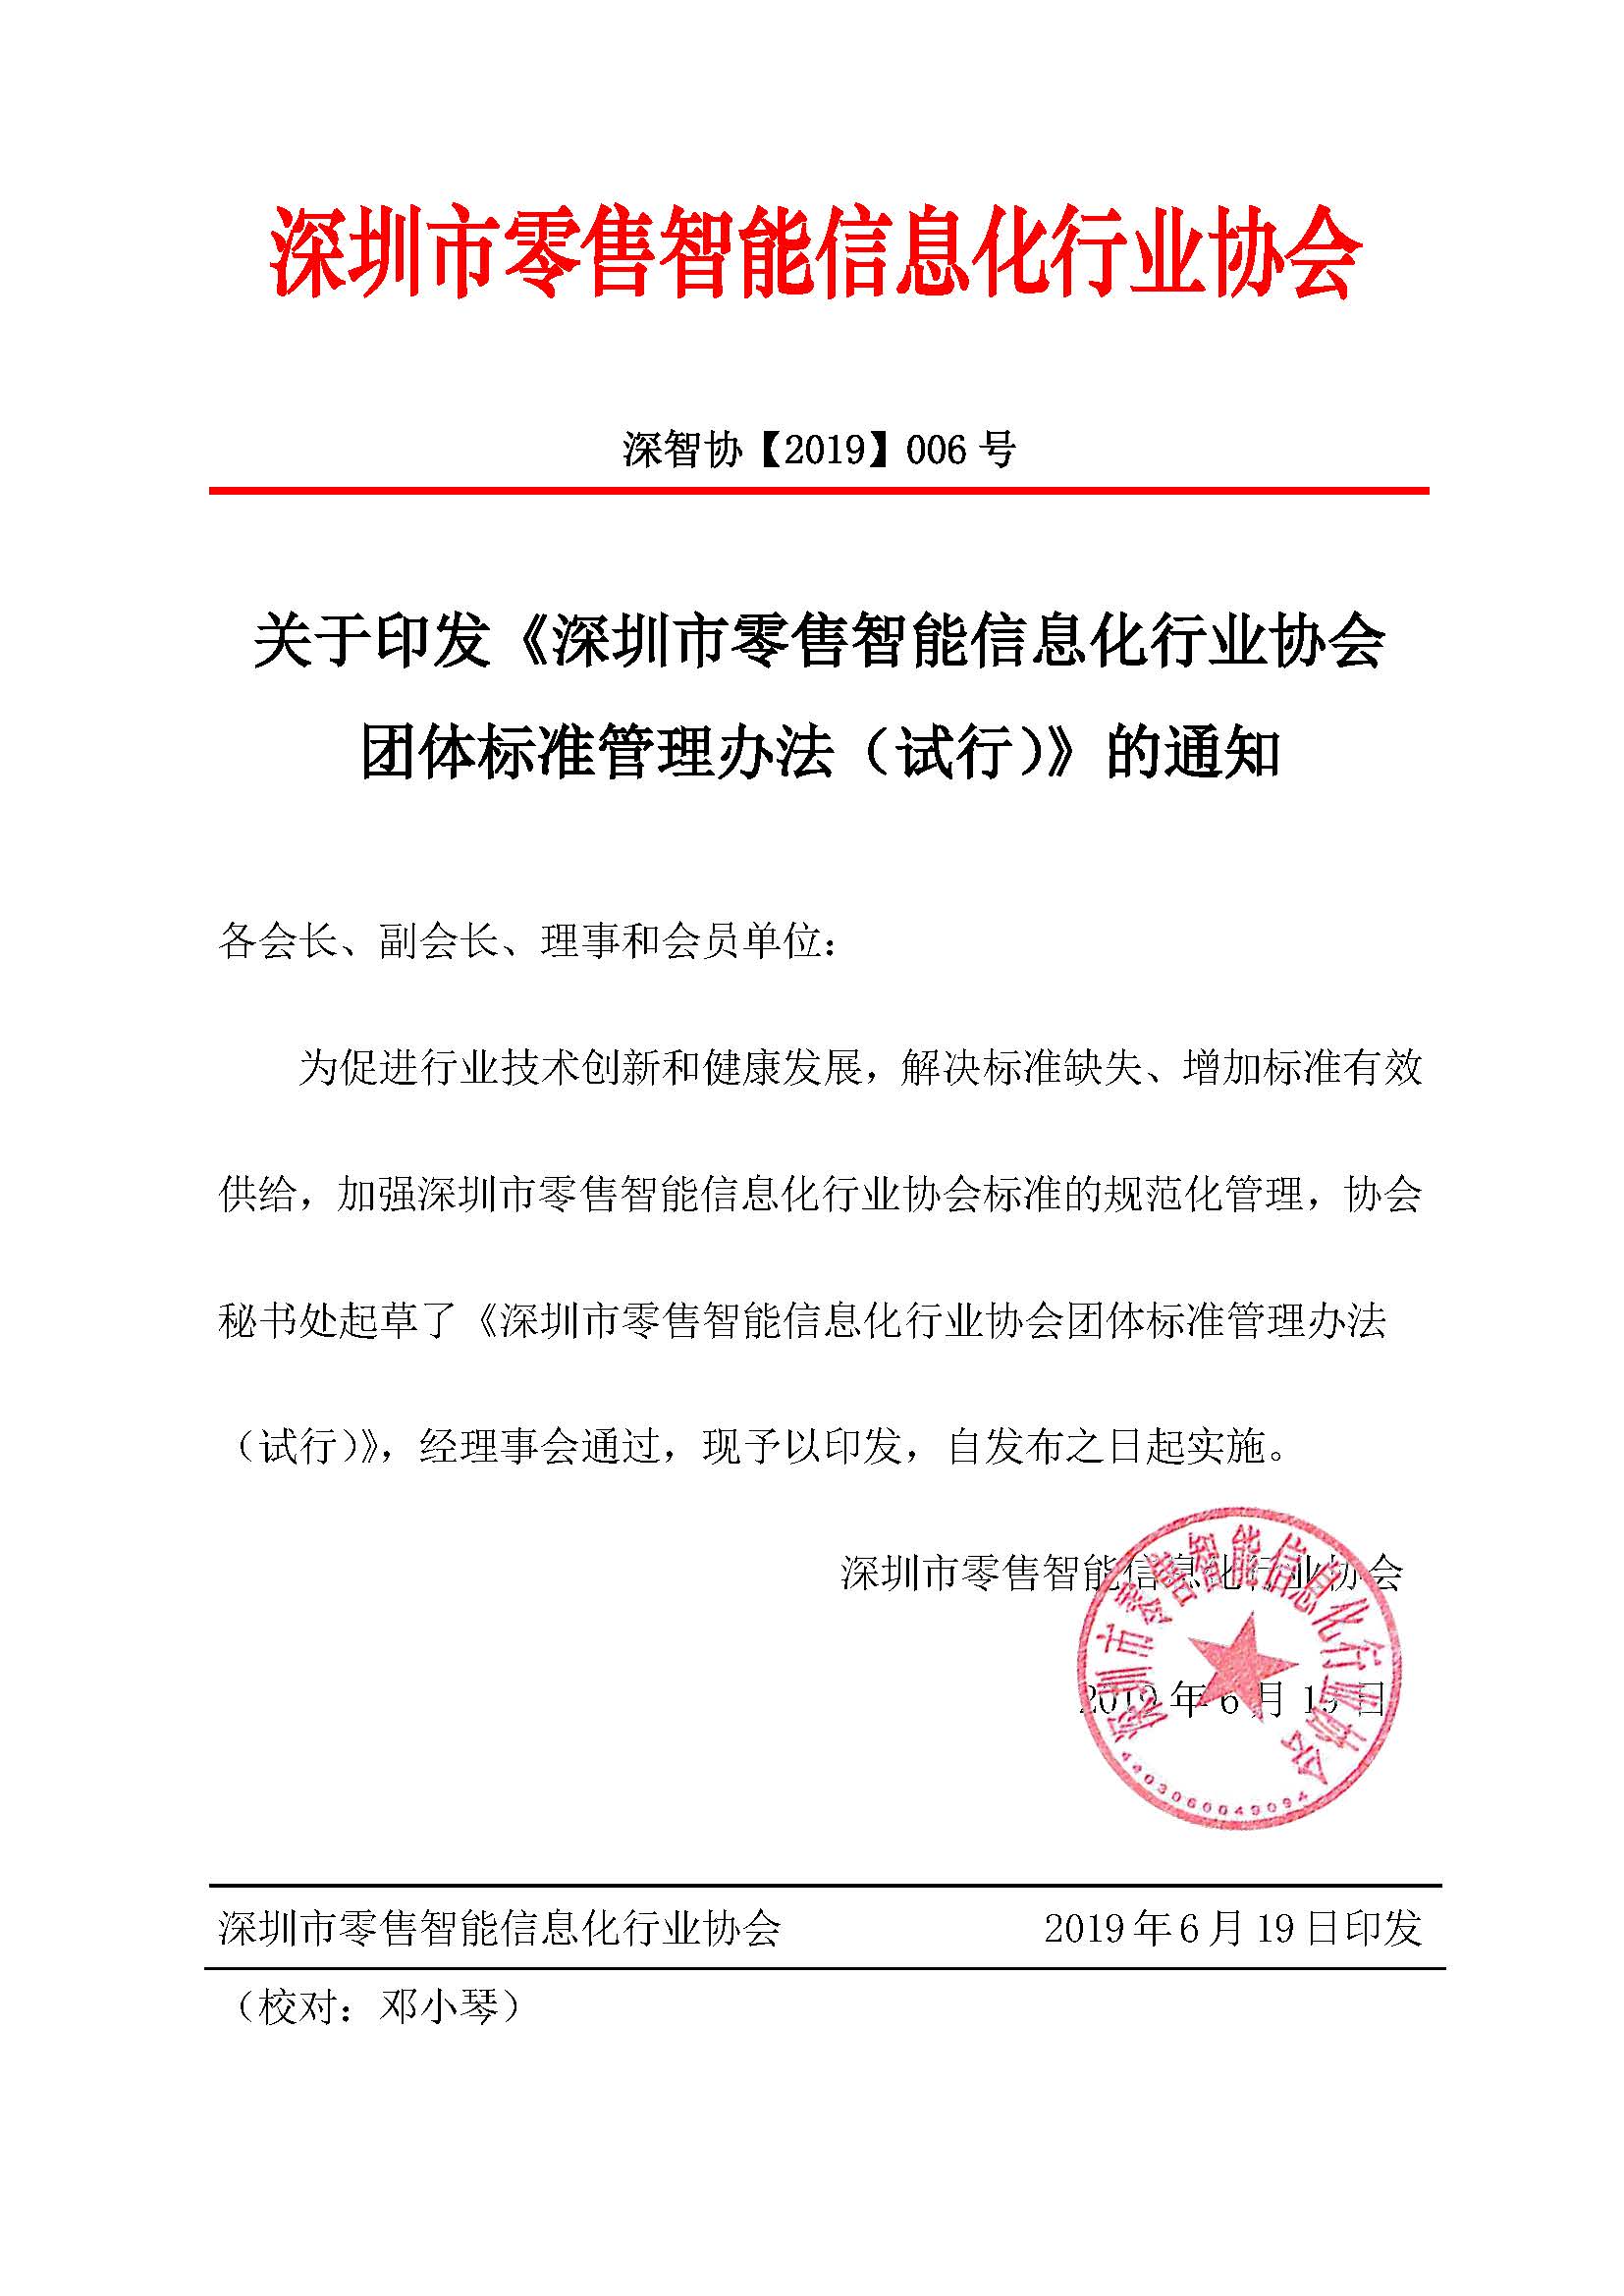 发布通知《深圳市零售智能信息化行业协会团体标准管理办法》_页面_1.jpg